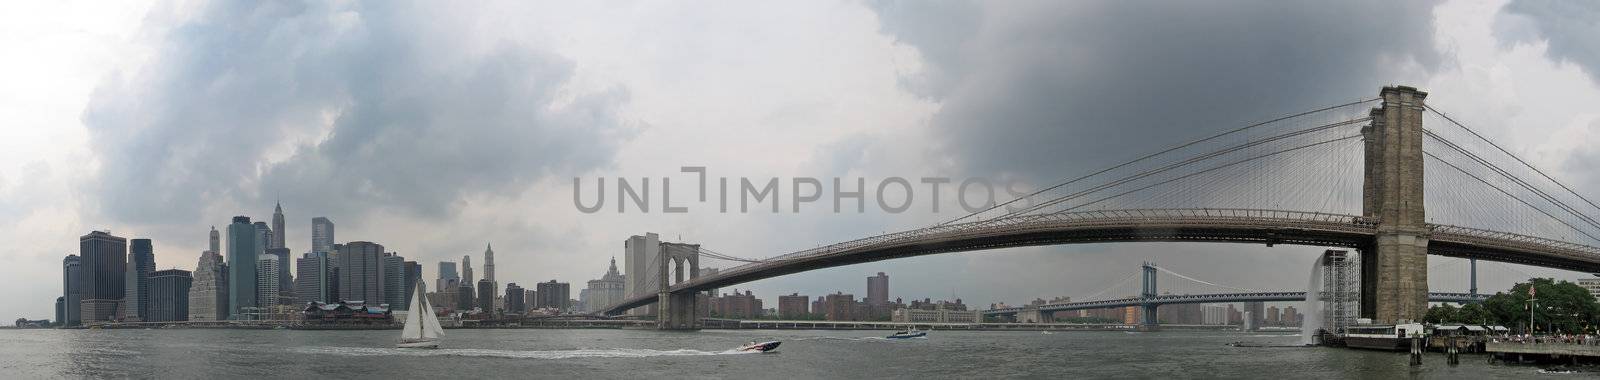 new york panorama photo, manhattan and brooklyn bridge, grey photo